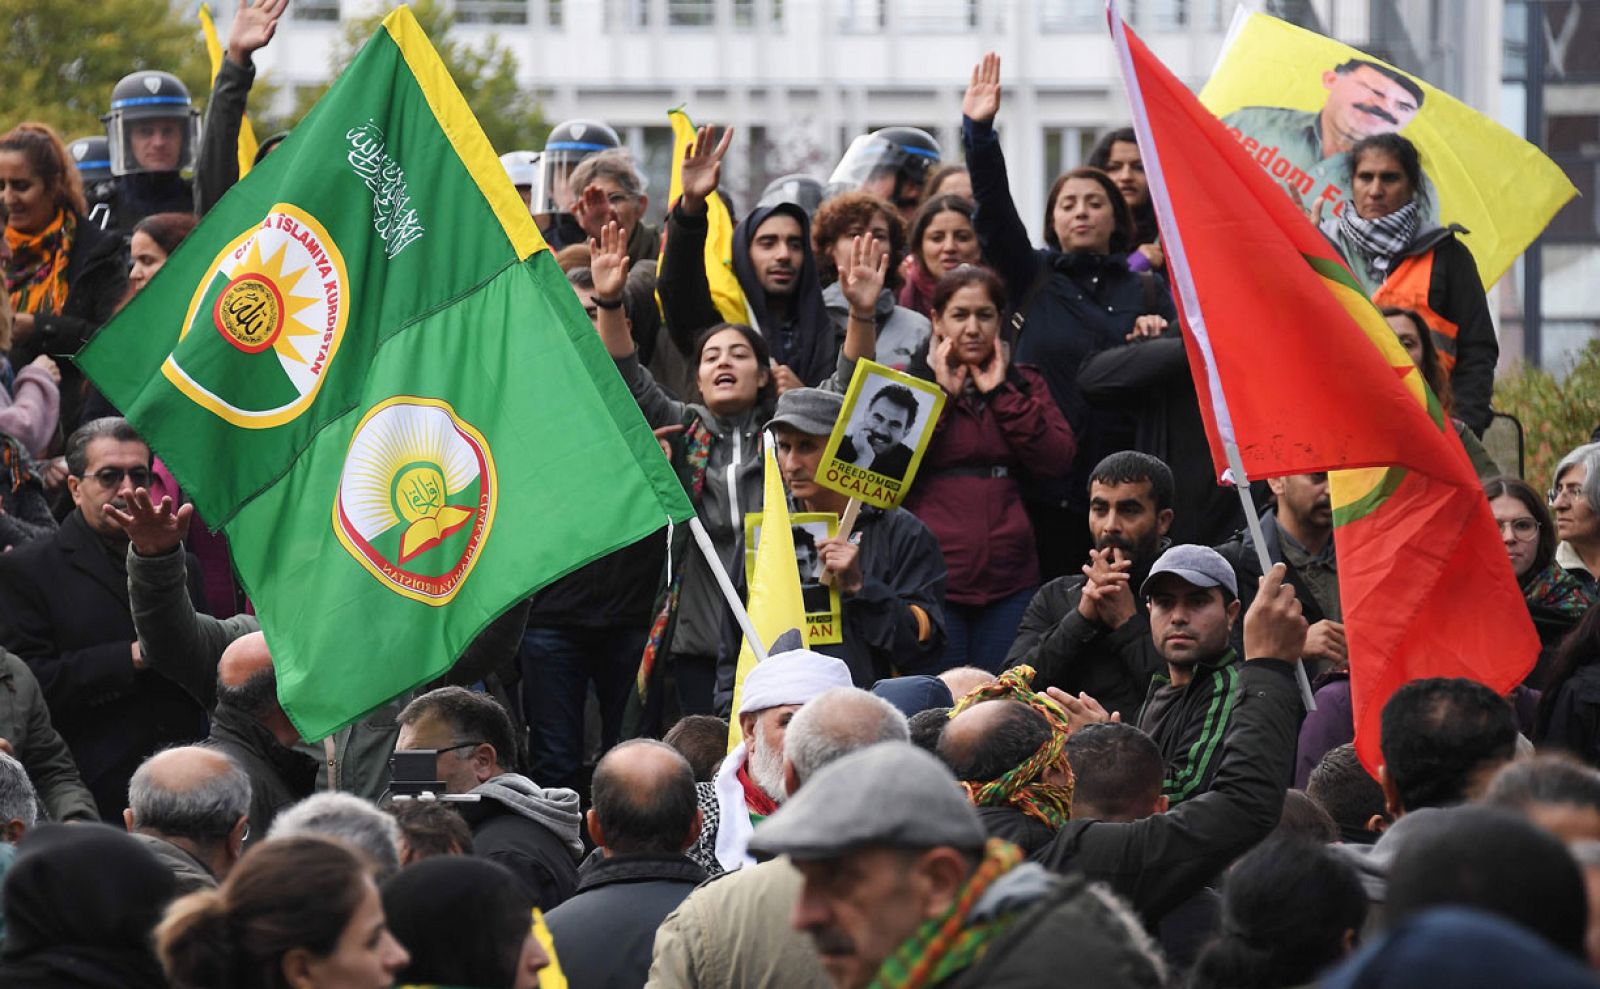 Los manifestantes kurdos agitan banderas y retratos del líder kurdo Abdullah Ocalan frente al Consejo de Europa en Estrasburgo, en el noreste de Francia, para protestar contra la acción militar de Turquía